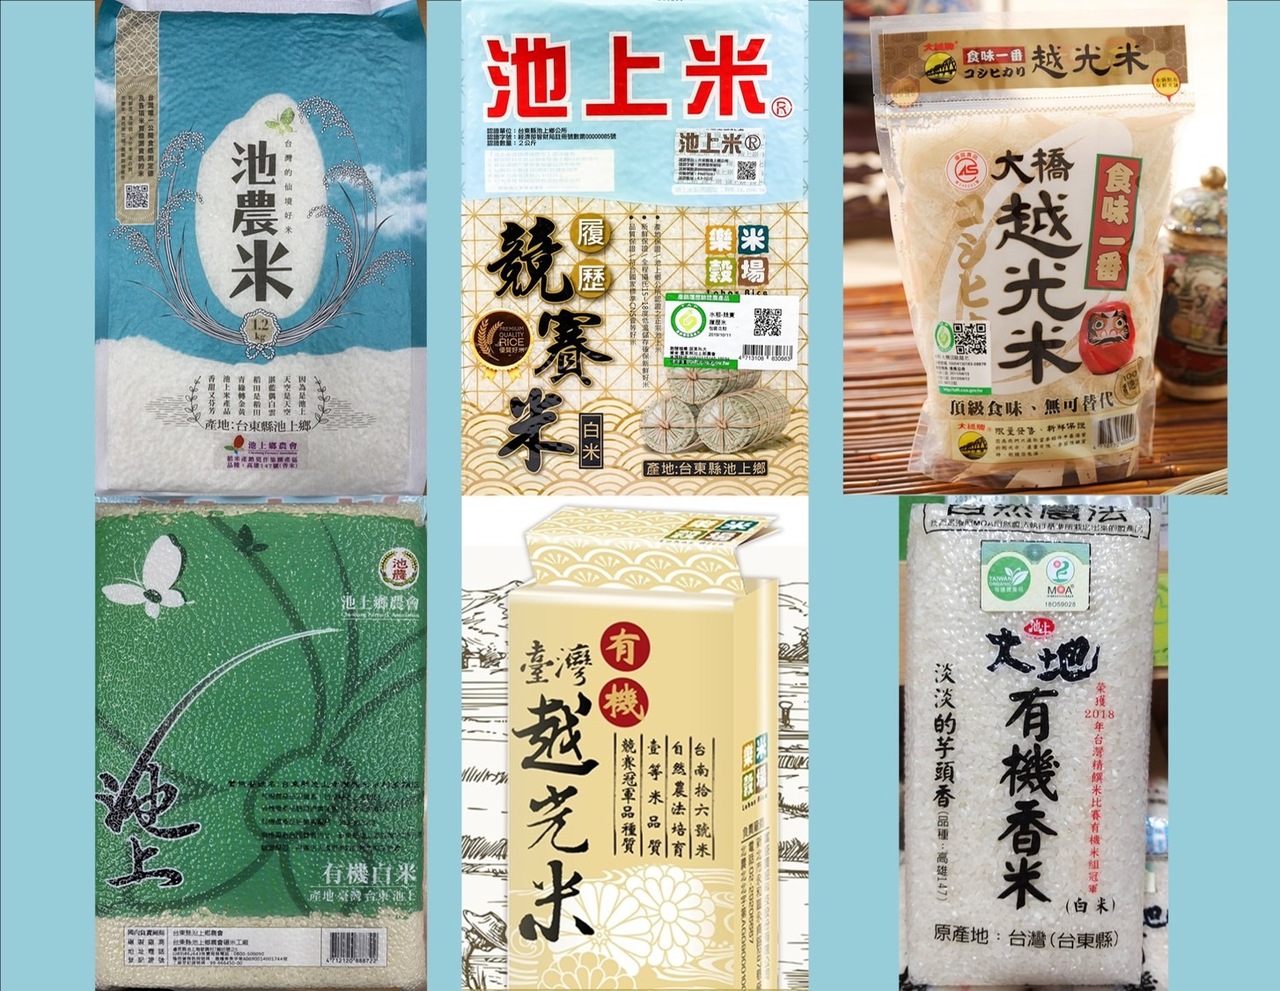 農糧署21精饌米獎出爐吃好米買好米有購便利 熱門亮點 商情 經濟日報